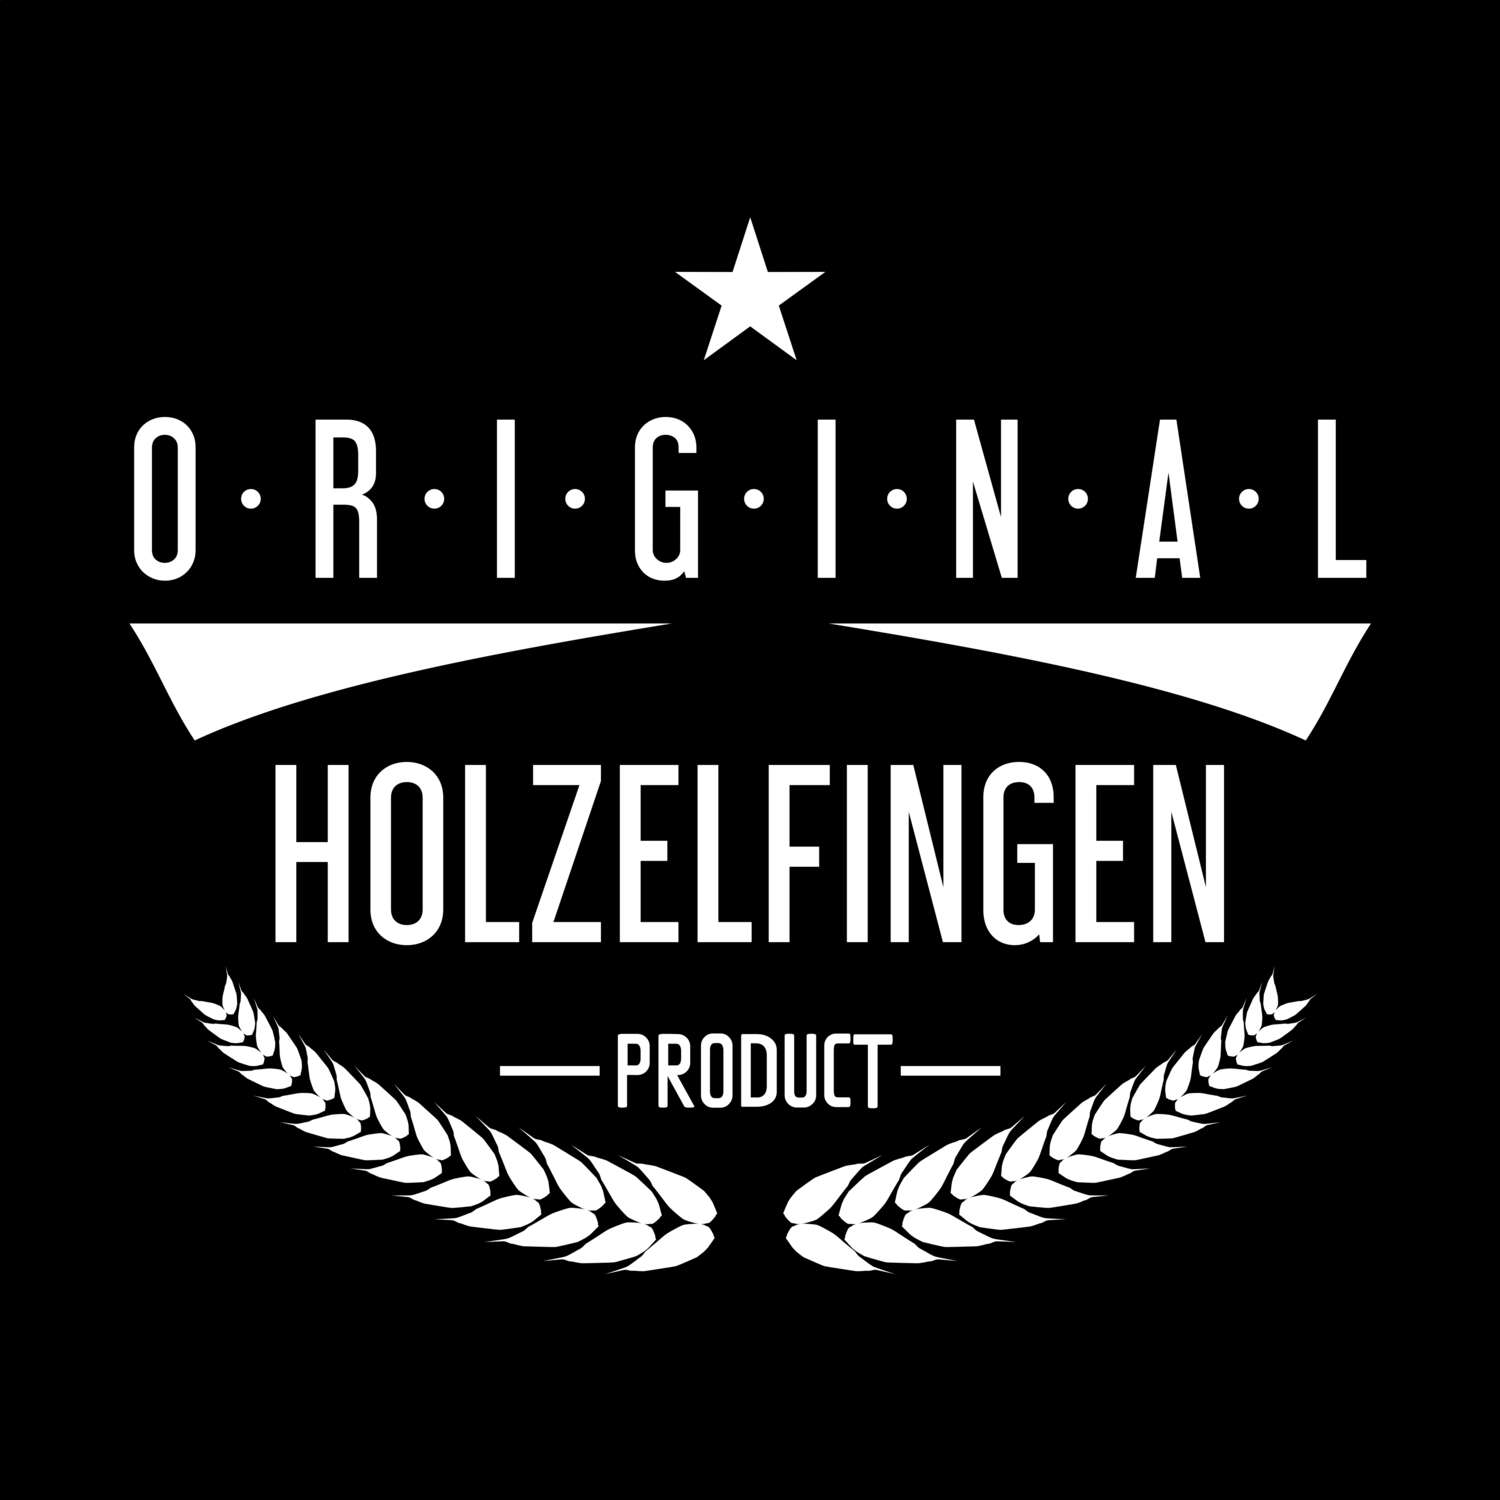 Holzelfingen T-Shirt »Original Product«